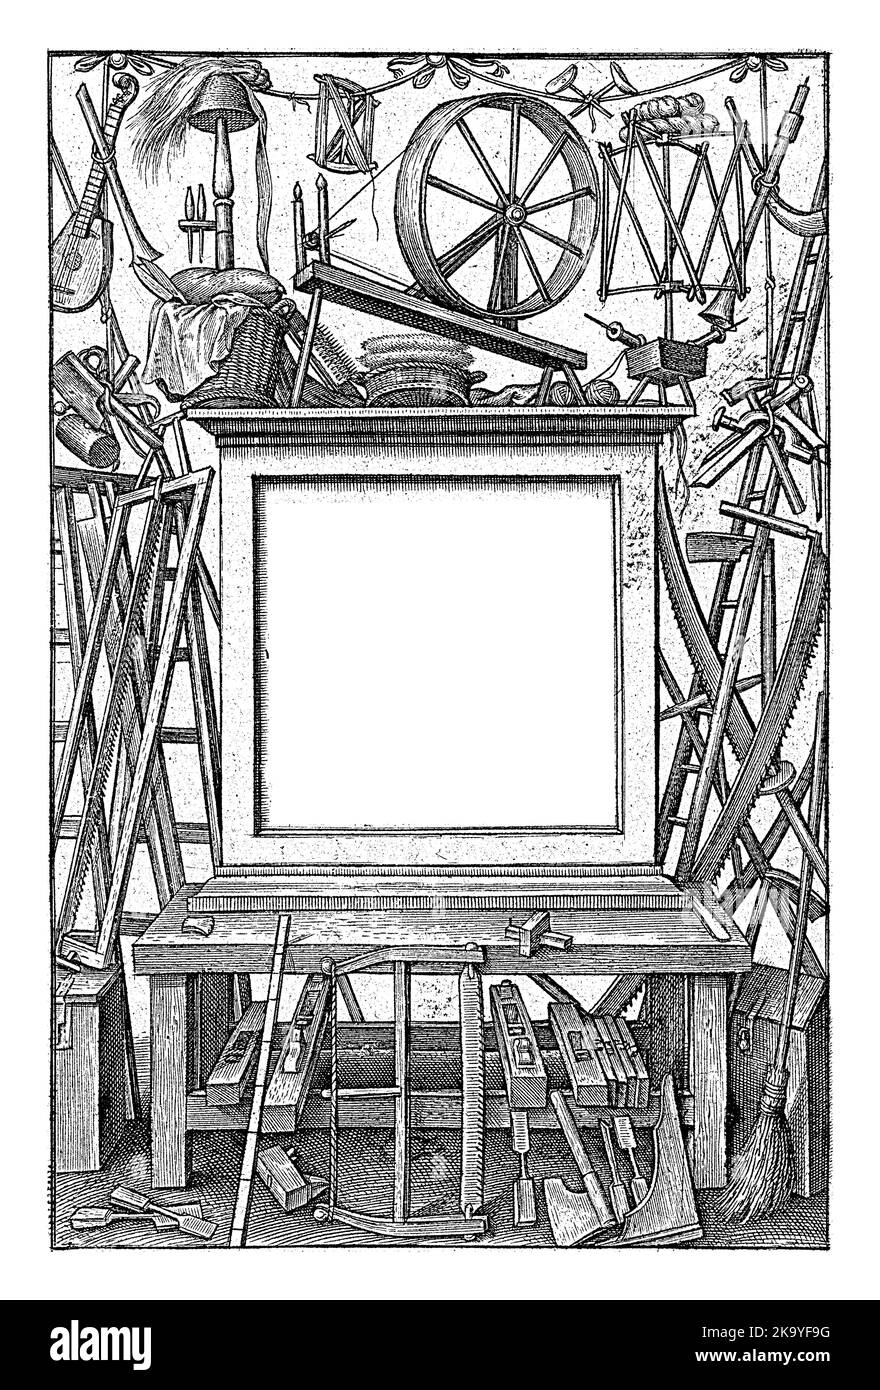 Banco di lavoro con utensili, Hieronymus Wierix, 1563 - prima del 1619 sul banco di lavoro un telaio con il titolo della serie in latino. Intorno esso tutti i generi di attrezzi e. Foto Stock